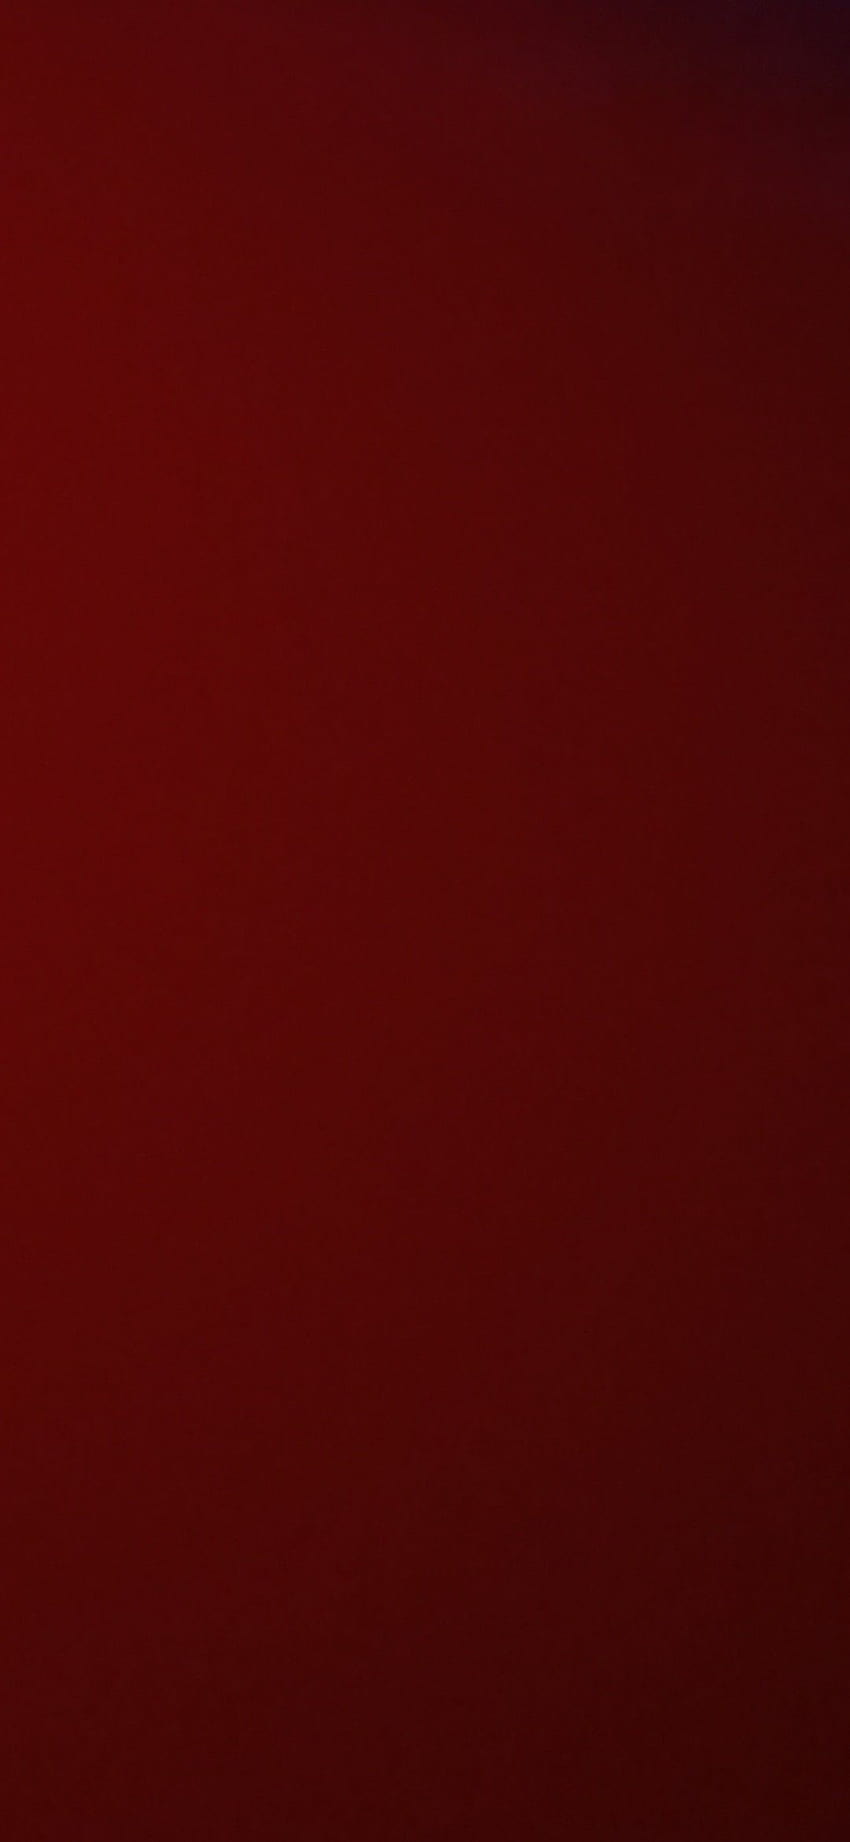 Solid Dark Red, merah murni wallpaper ponsel HD